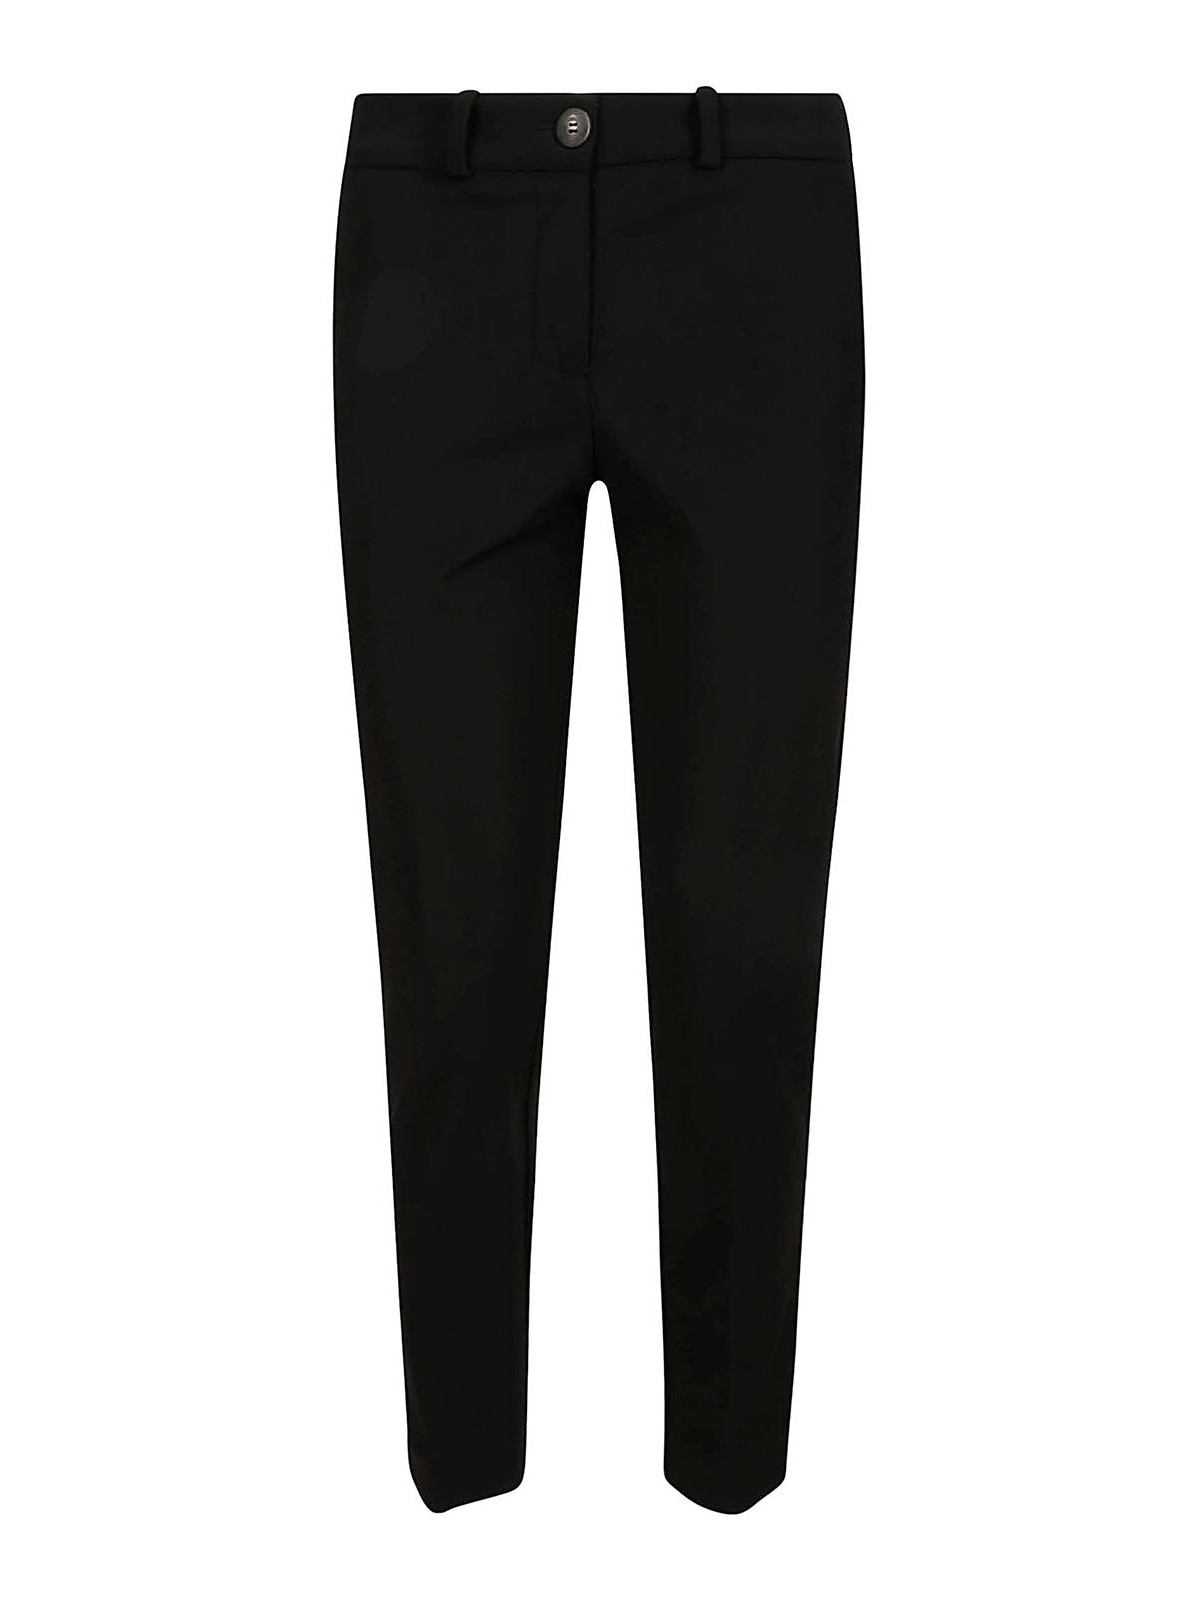 Rrd Roberto Ricci Designs Winter Chino Wom Trouser In Black